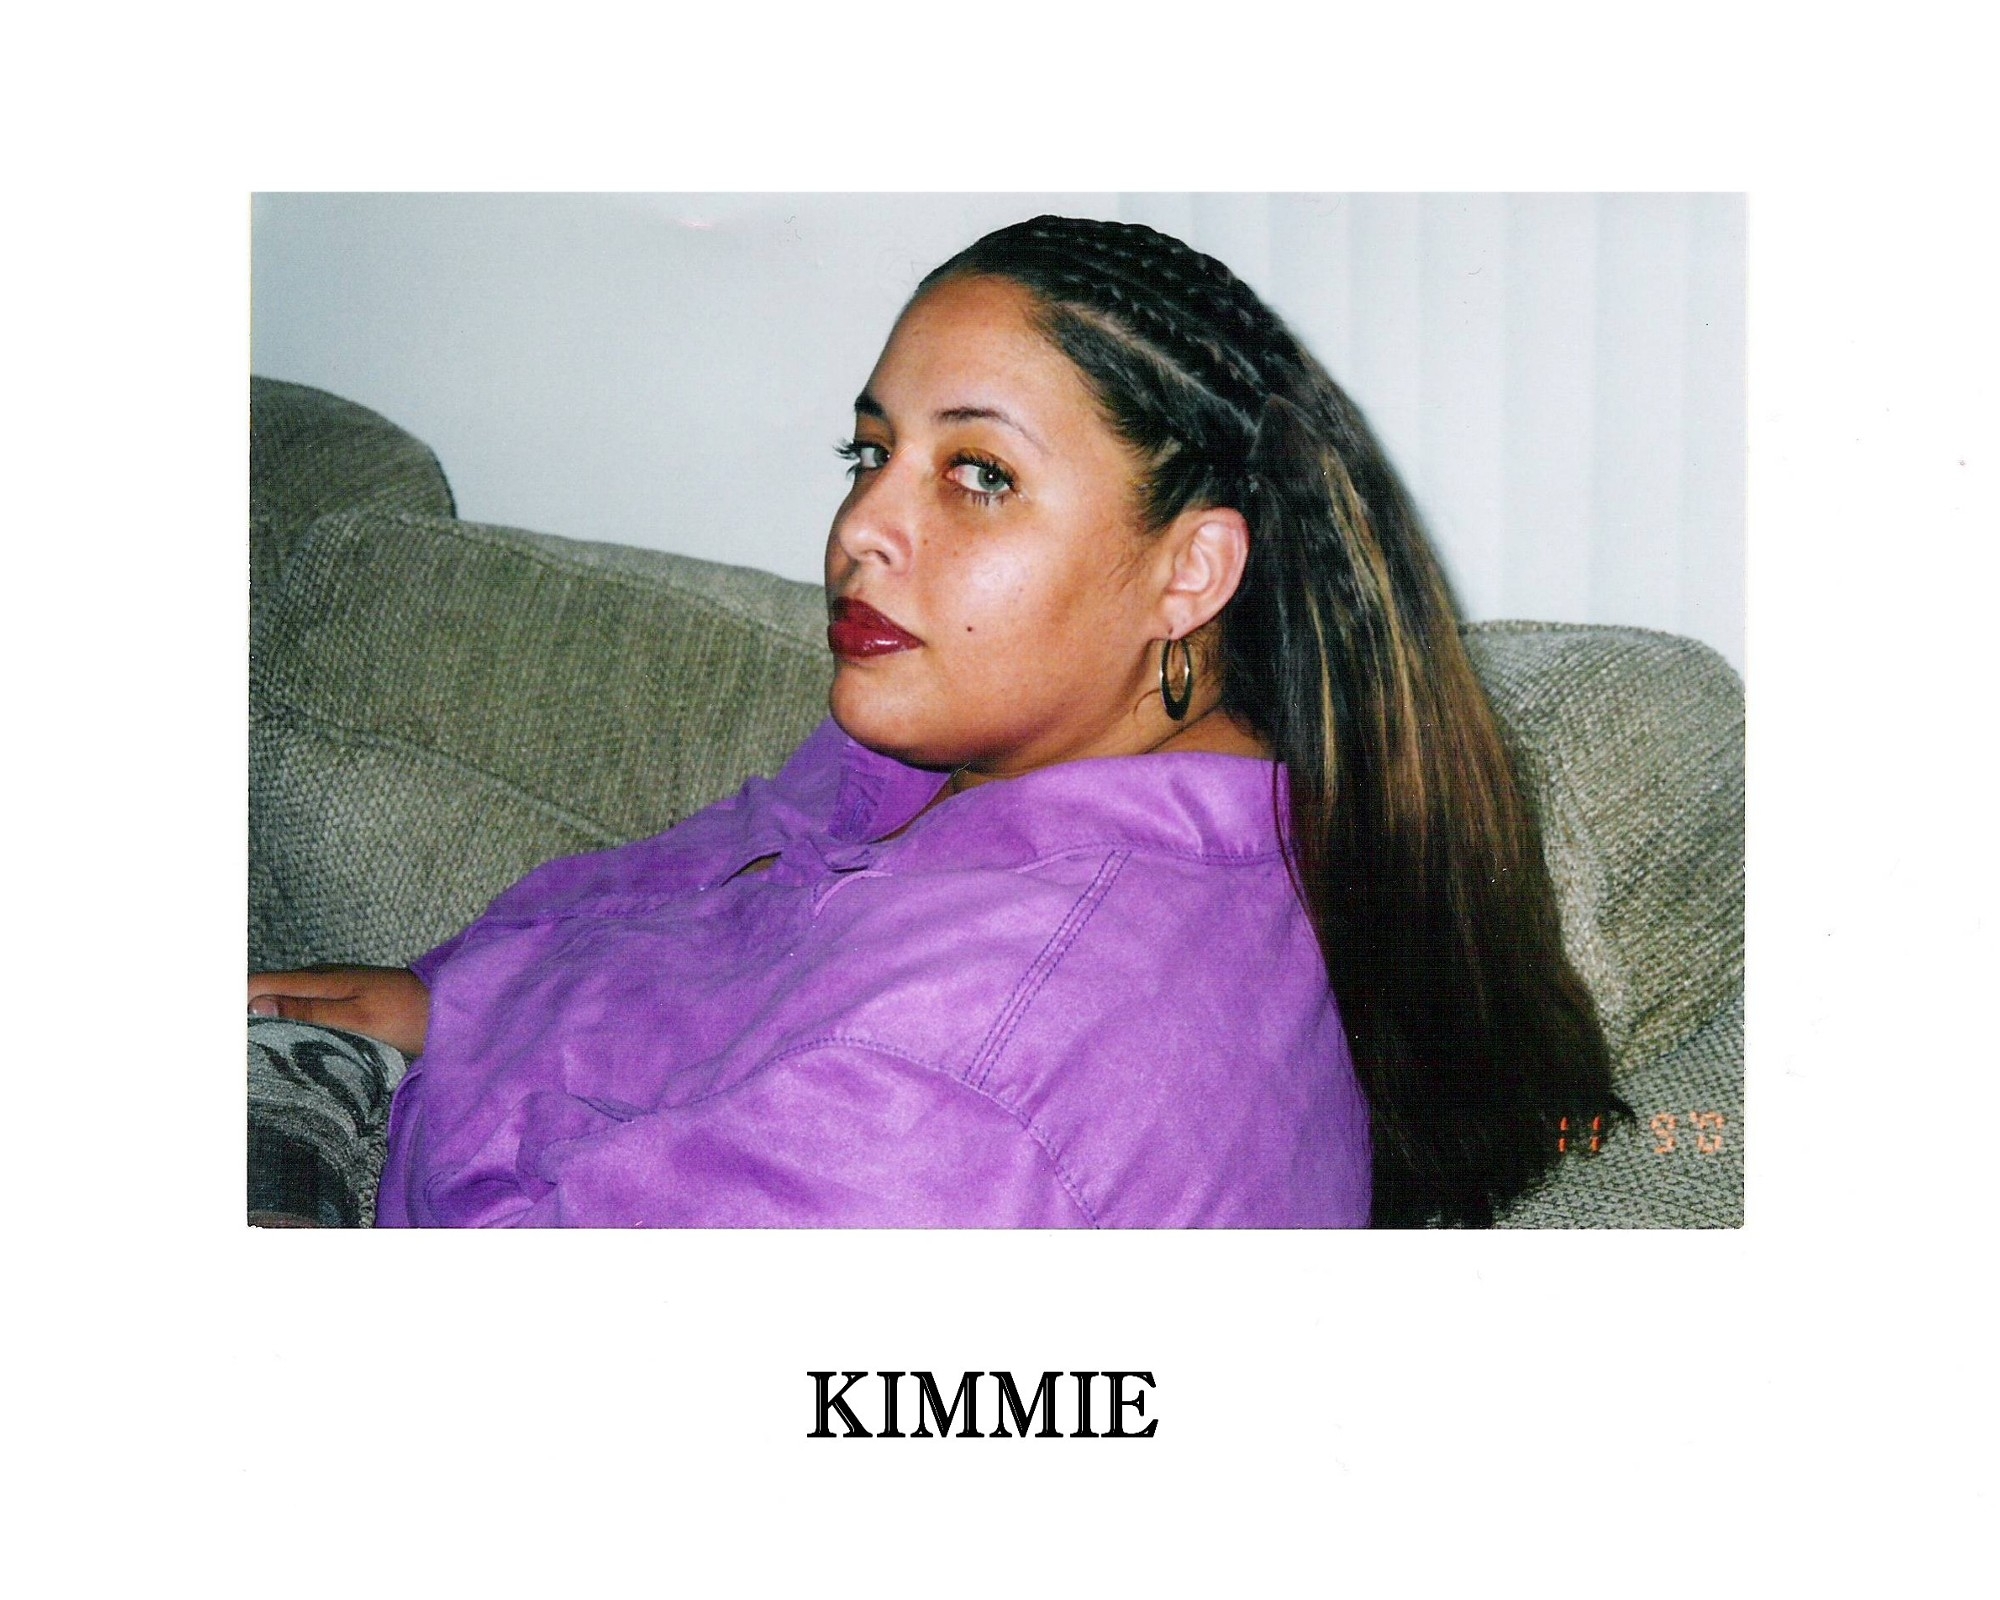 Kimmie (Raziya) Grant